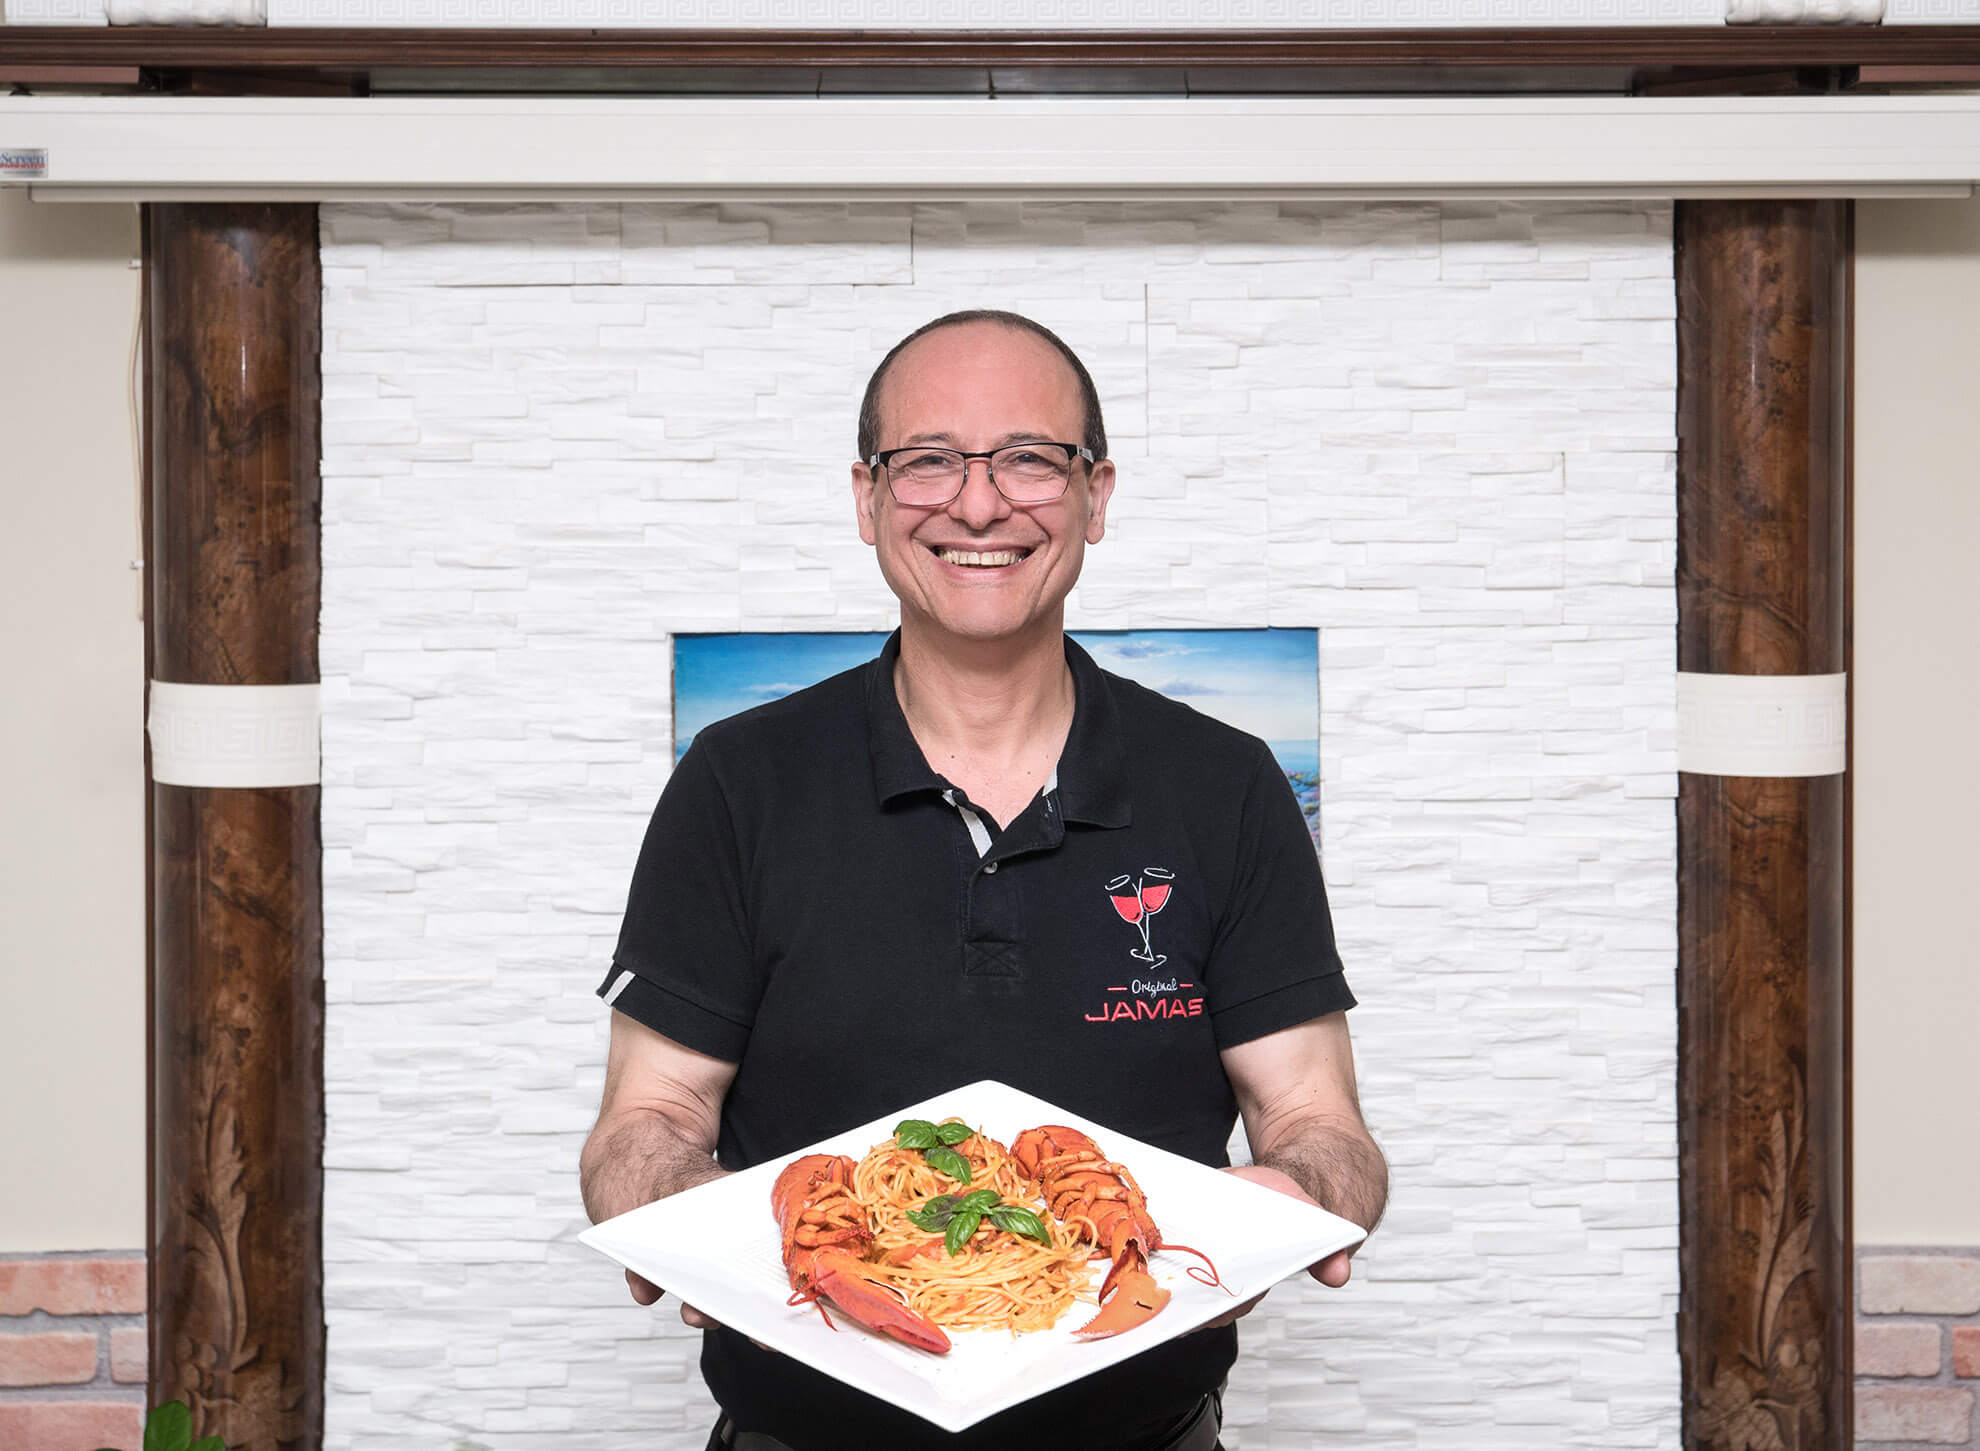 Der Besitzer des griechischen Restaurants Jamas präsentiert lächelnd ein griechisches Nudelgericht mit Meerestieren.